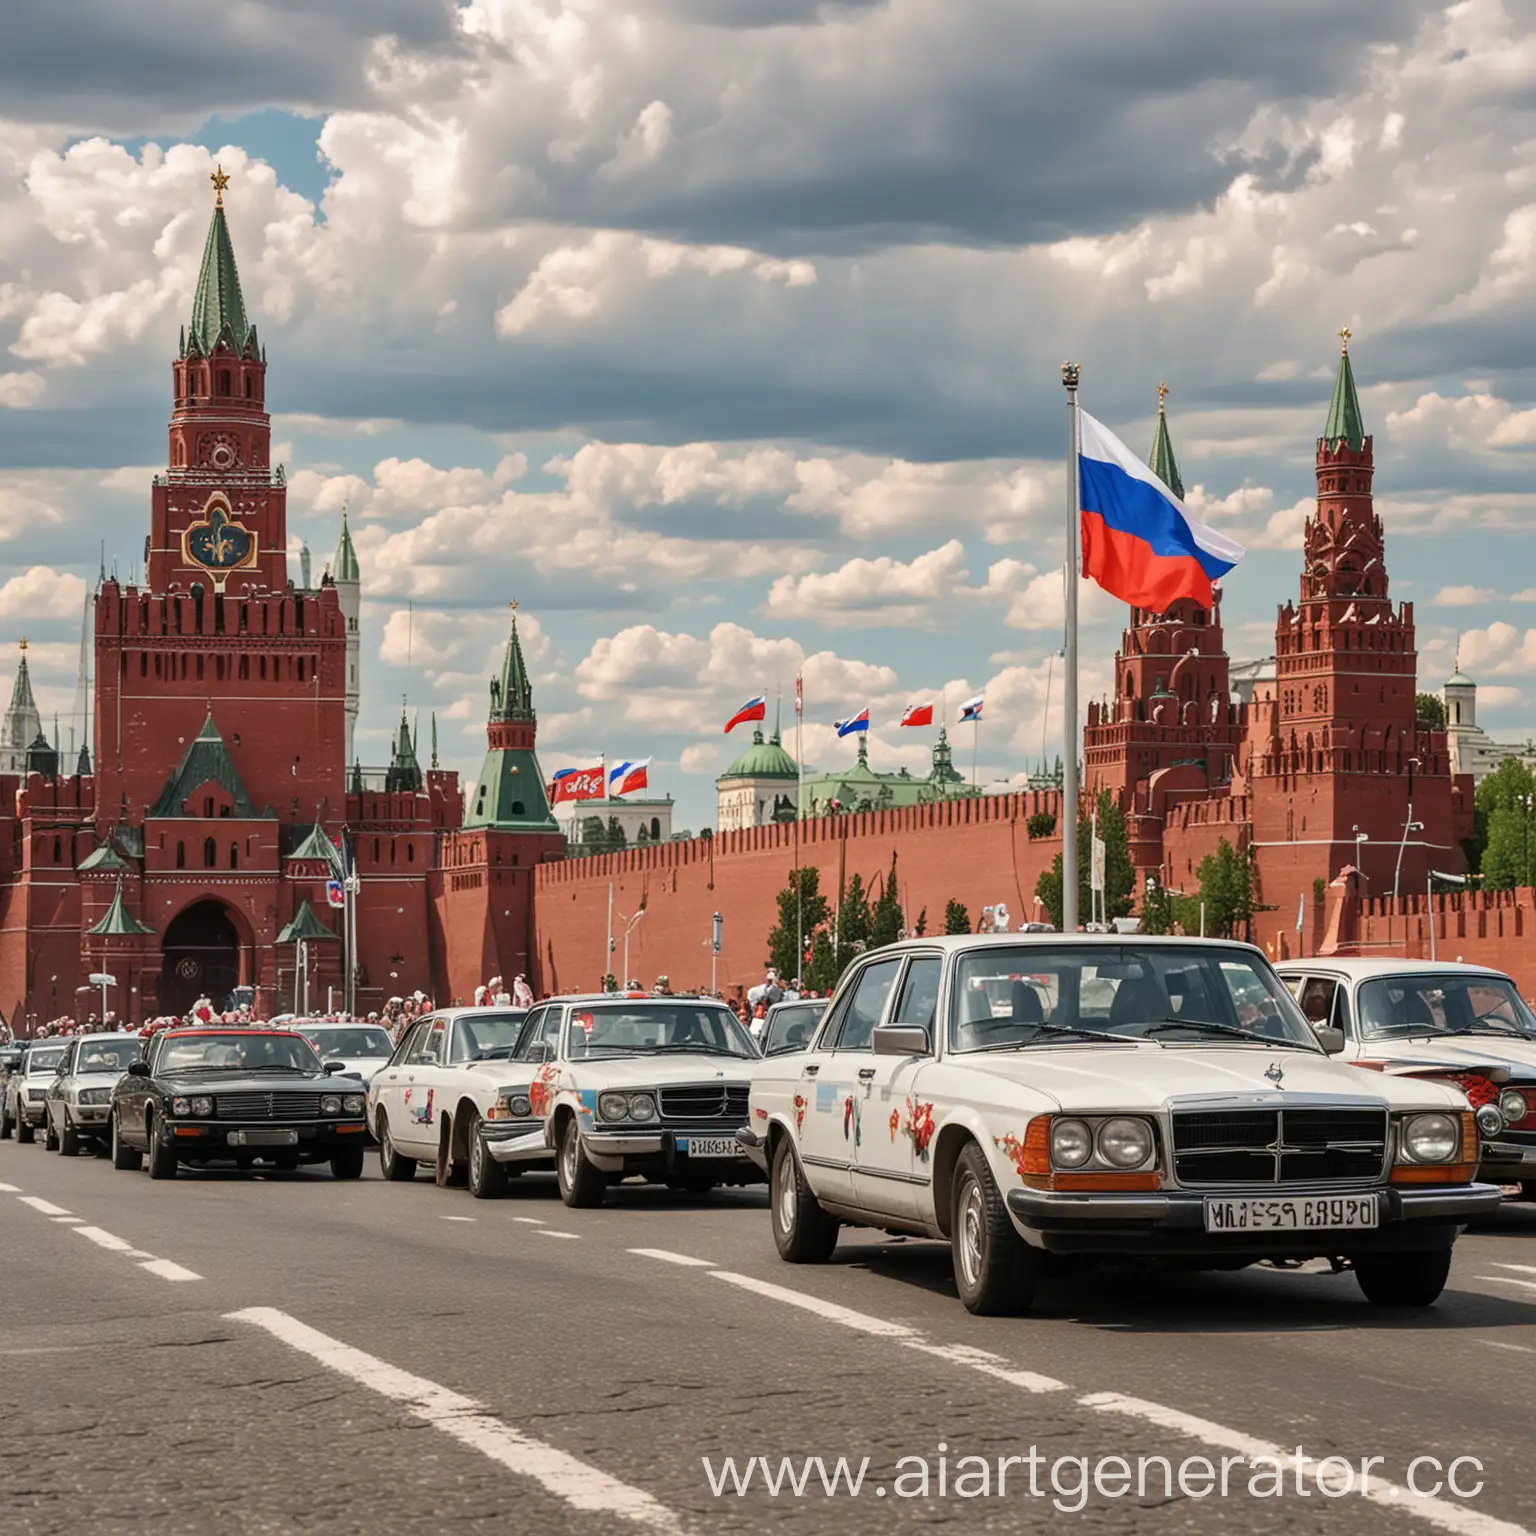 Изображение на котором изображены несколько автомобилей. Флаг России. Улыбающиеся люди. На фоне Кремля. В честь праздника 12 июня. День России.